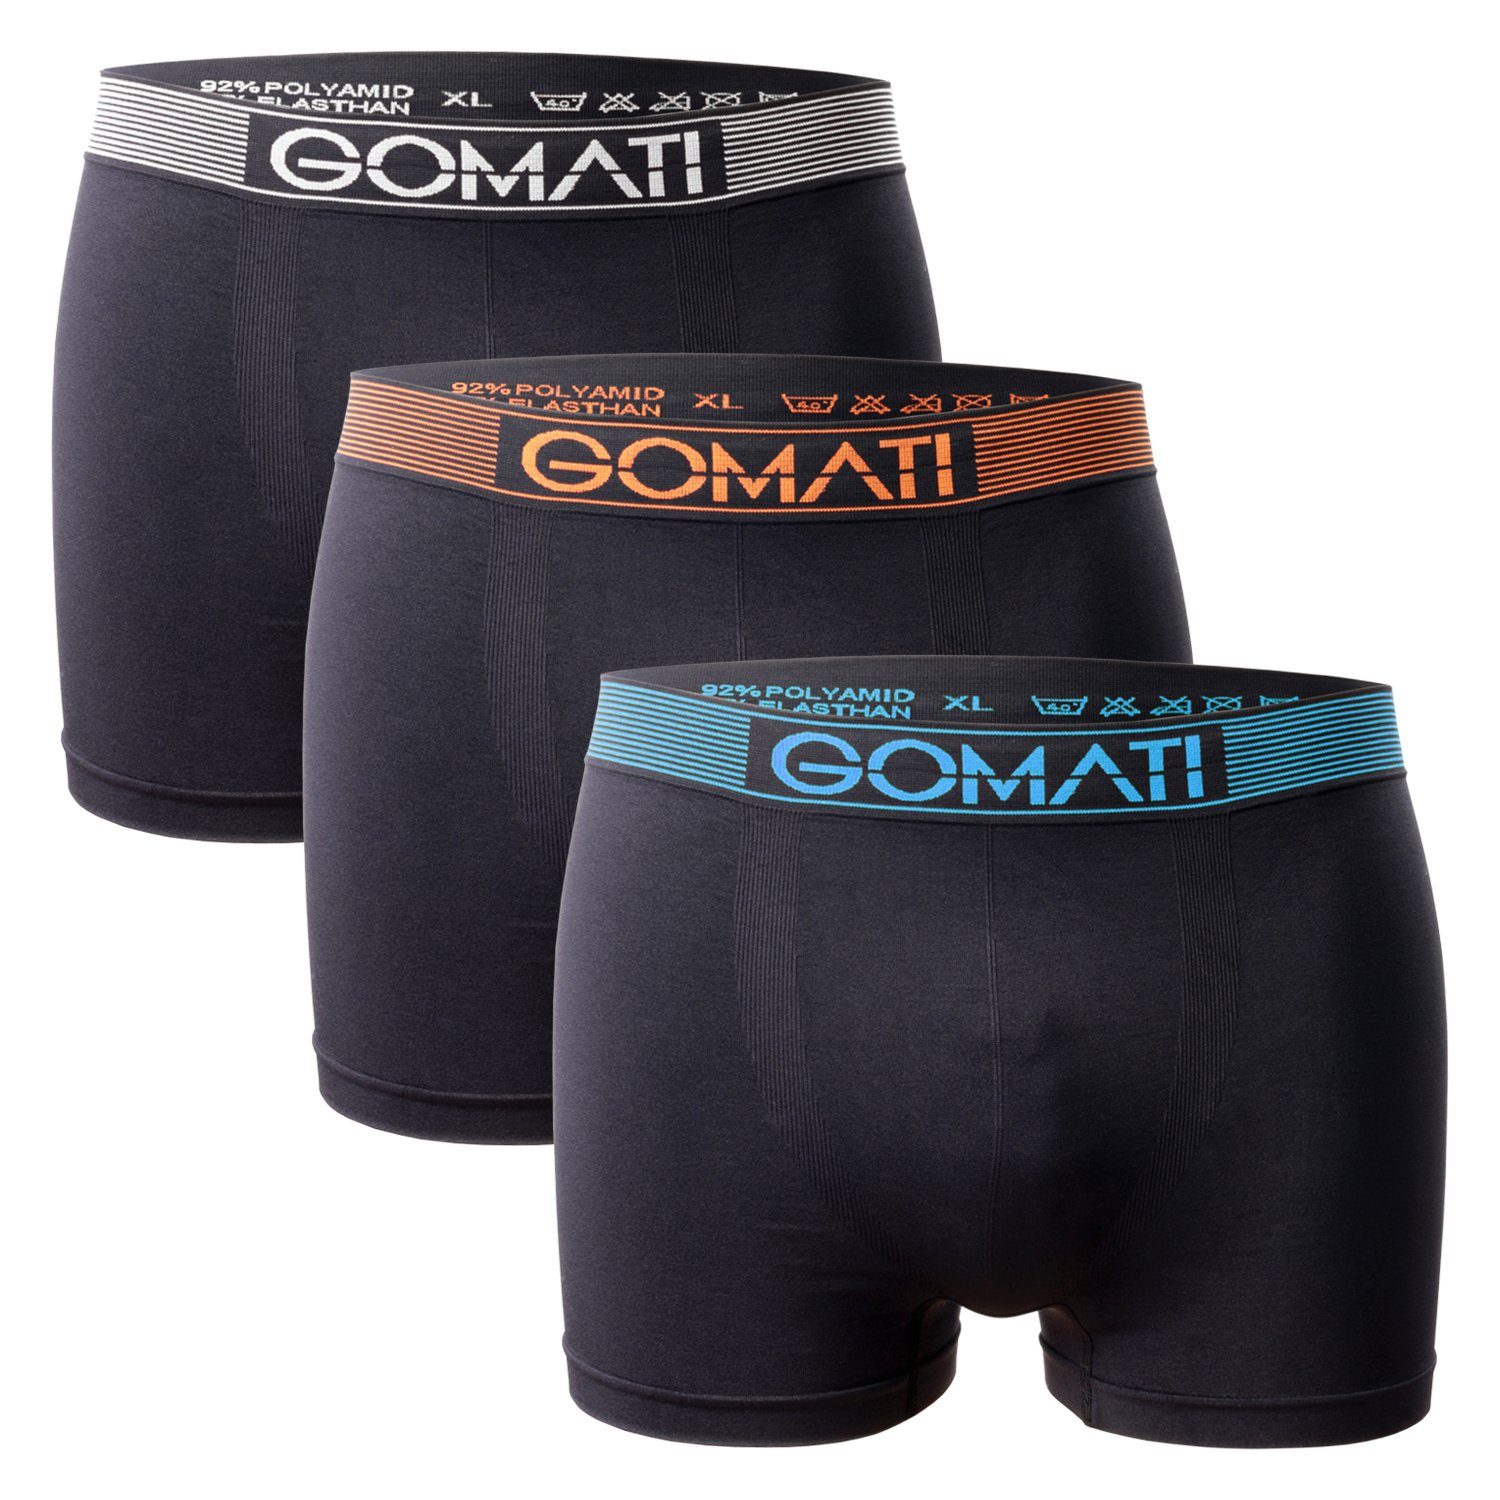 Gomati Boxershorts Herren Seamless Pants (3er Pack) Microfaser-Elasthan Boxershorts Black Mix